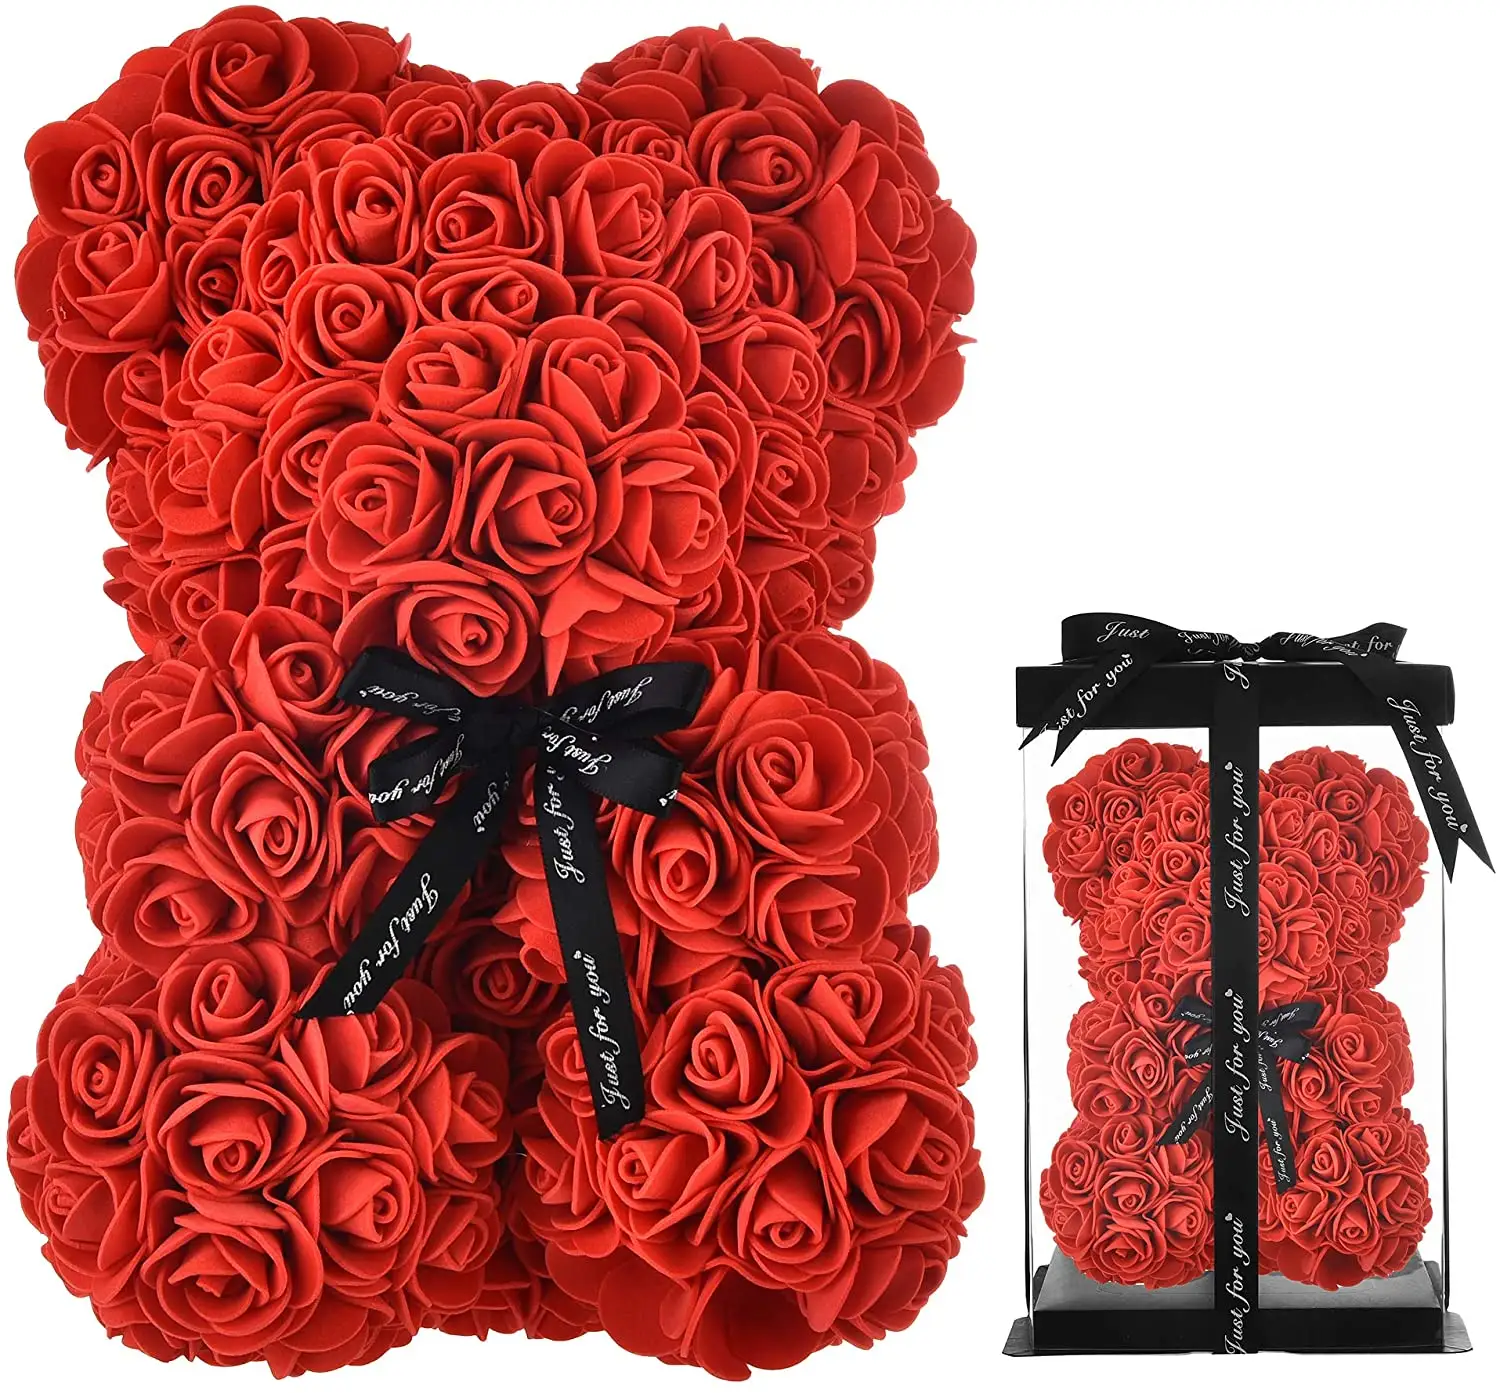 Orsacchiotto personalizzato da 25cm con orsacchiotto a nastro per regali per la festa della mamma orsacchiotto rosa matrimonio decorazioni per regali di san valentino